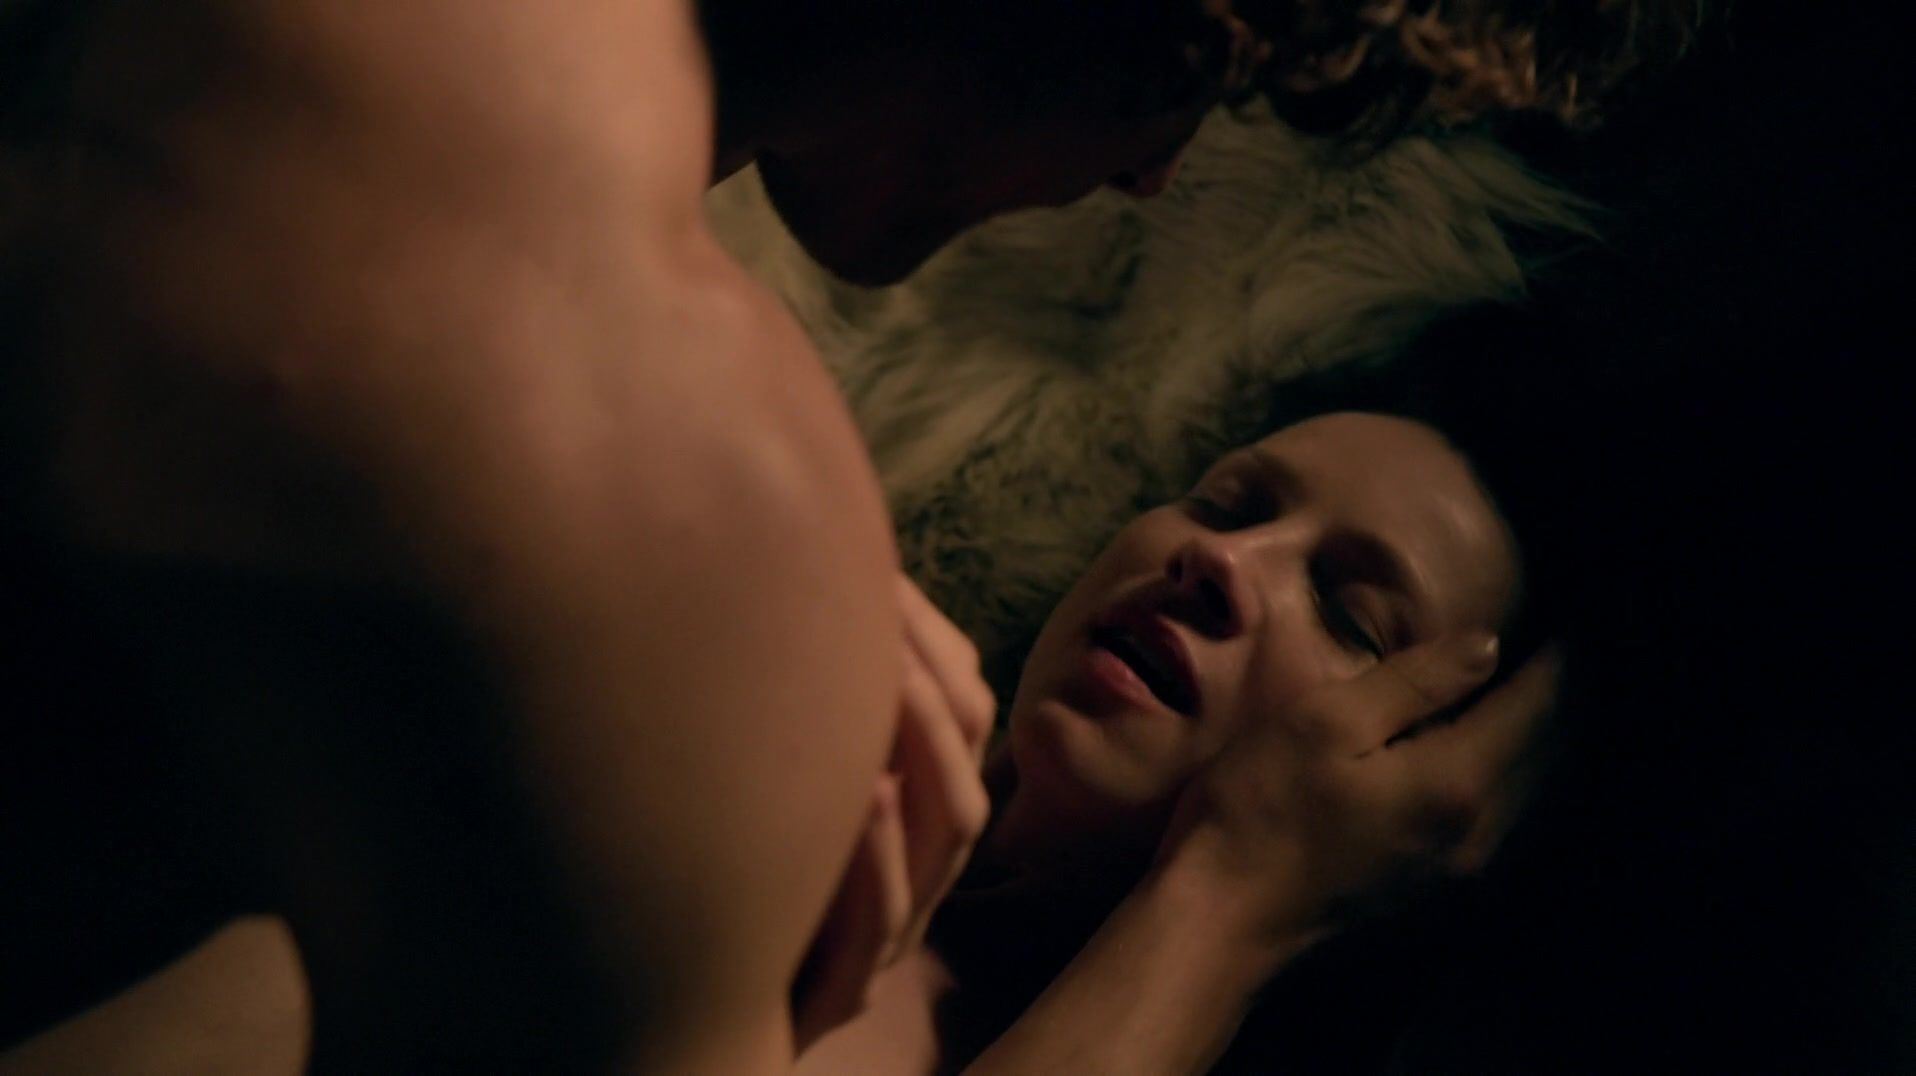 OnOff Sex scene of naked Caitriona Balfe | TV show "Outlander" Sister - 1